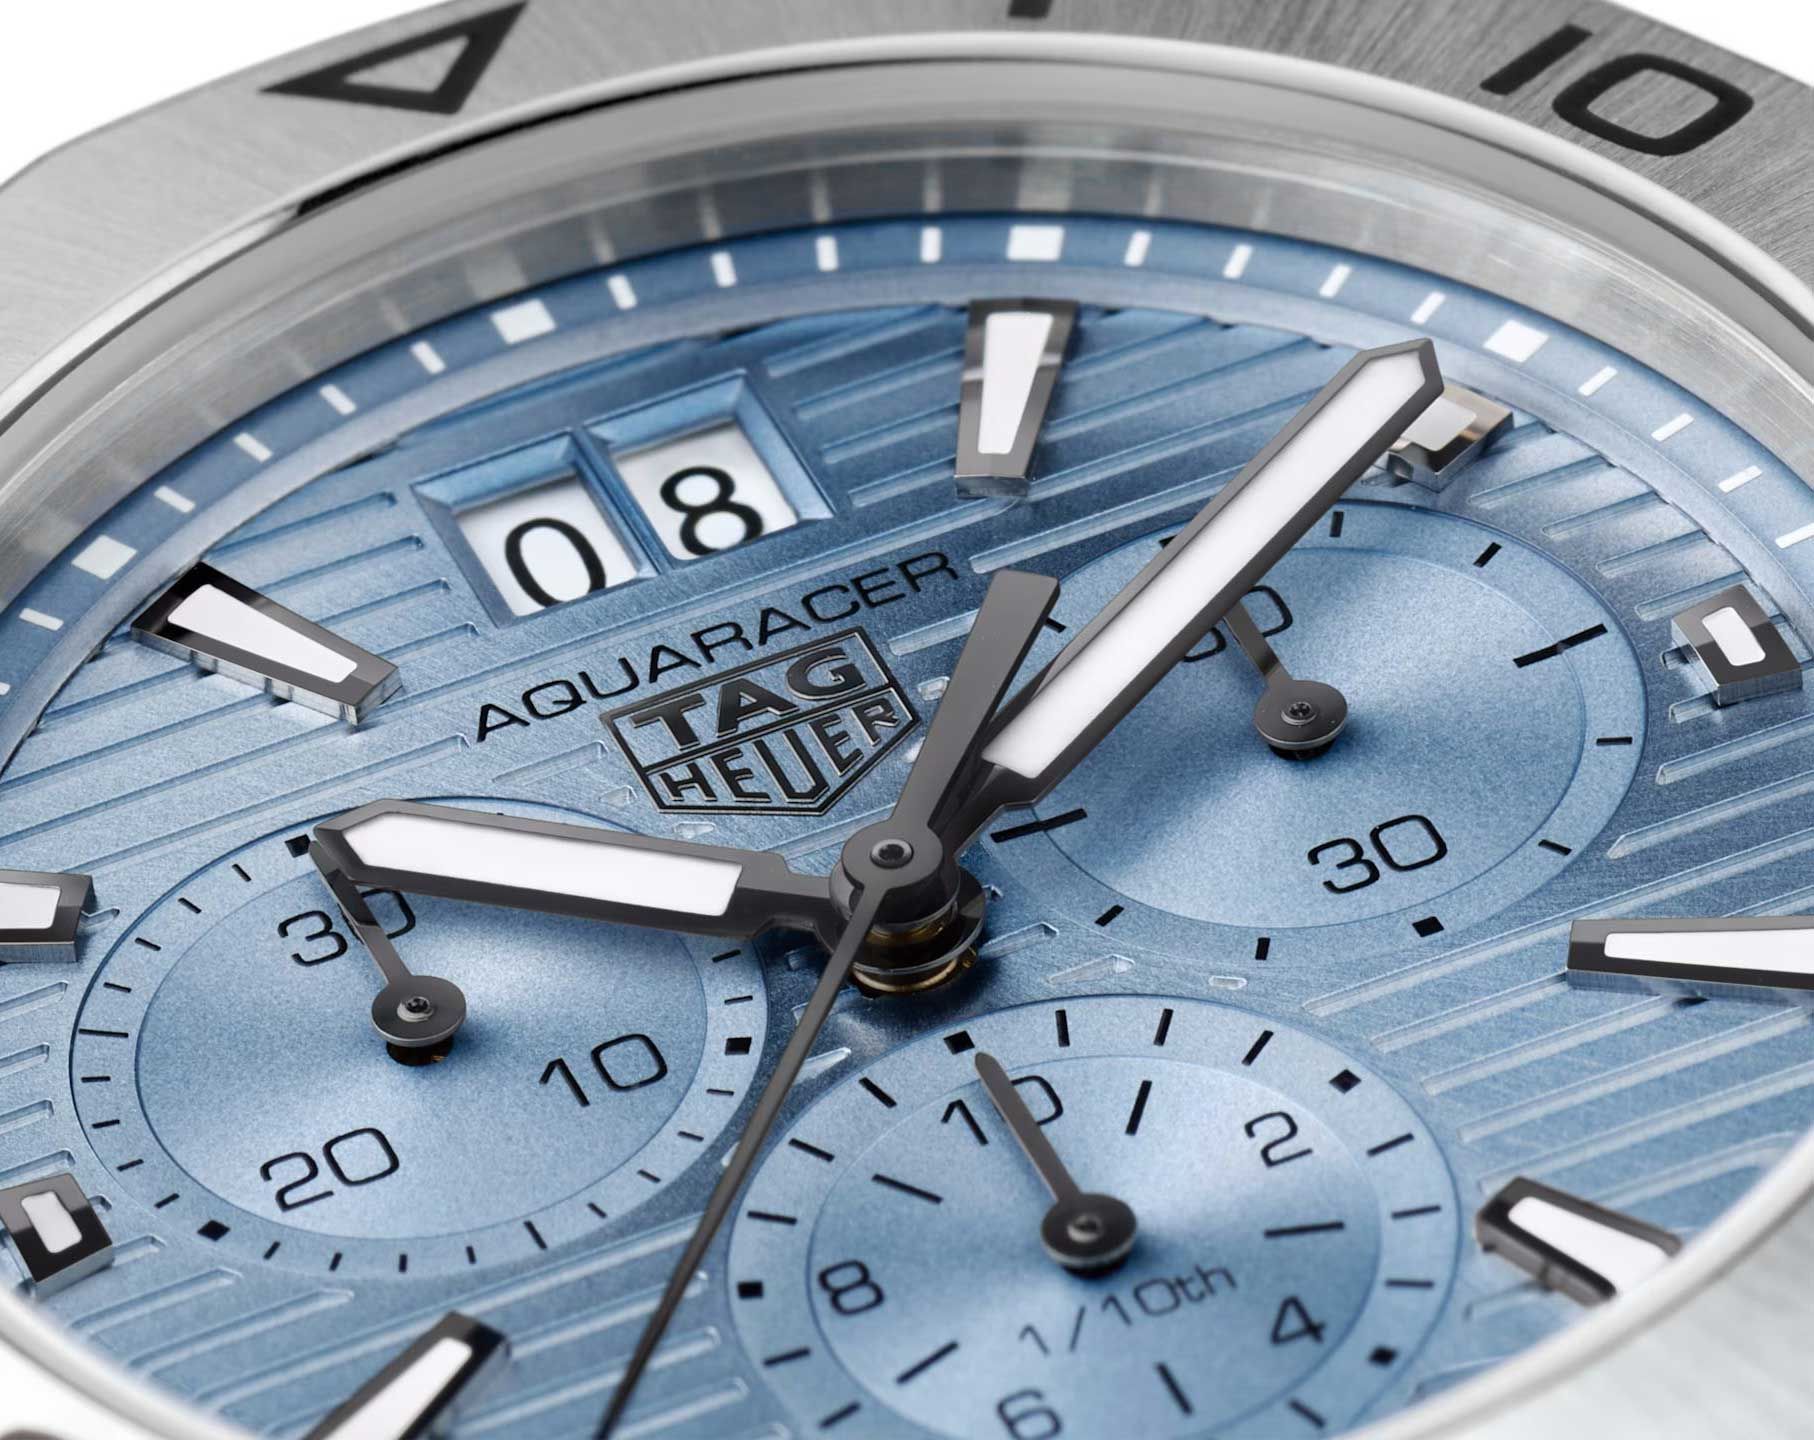 TAG Heuer Aquaracer Professional 200 Blue Dial 40 mm Quartz Watch For Men - 4